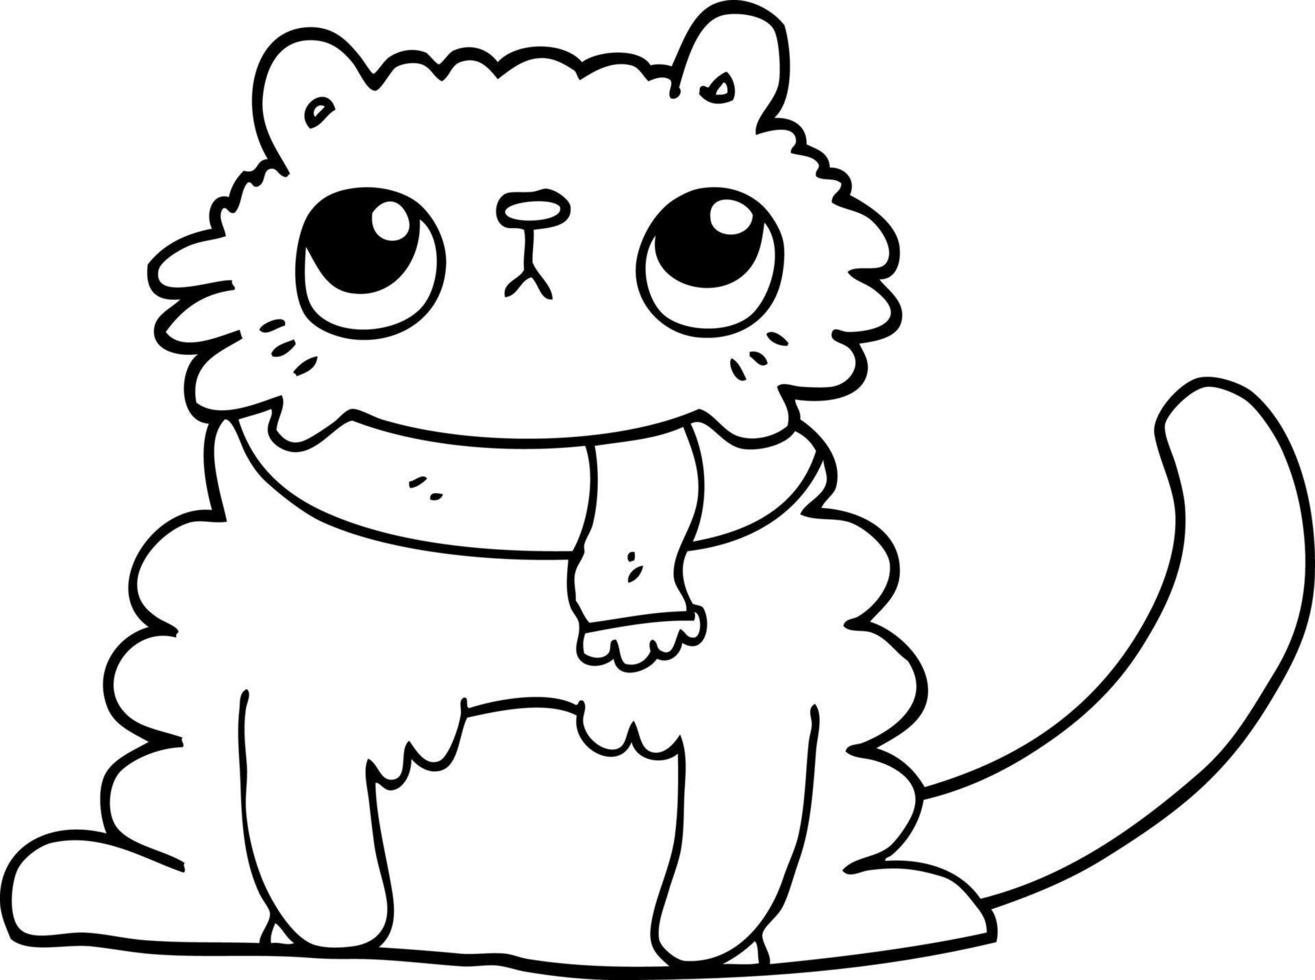 Strichzeichnung Cartoon-Katze vektor